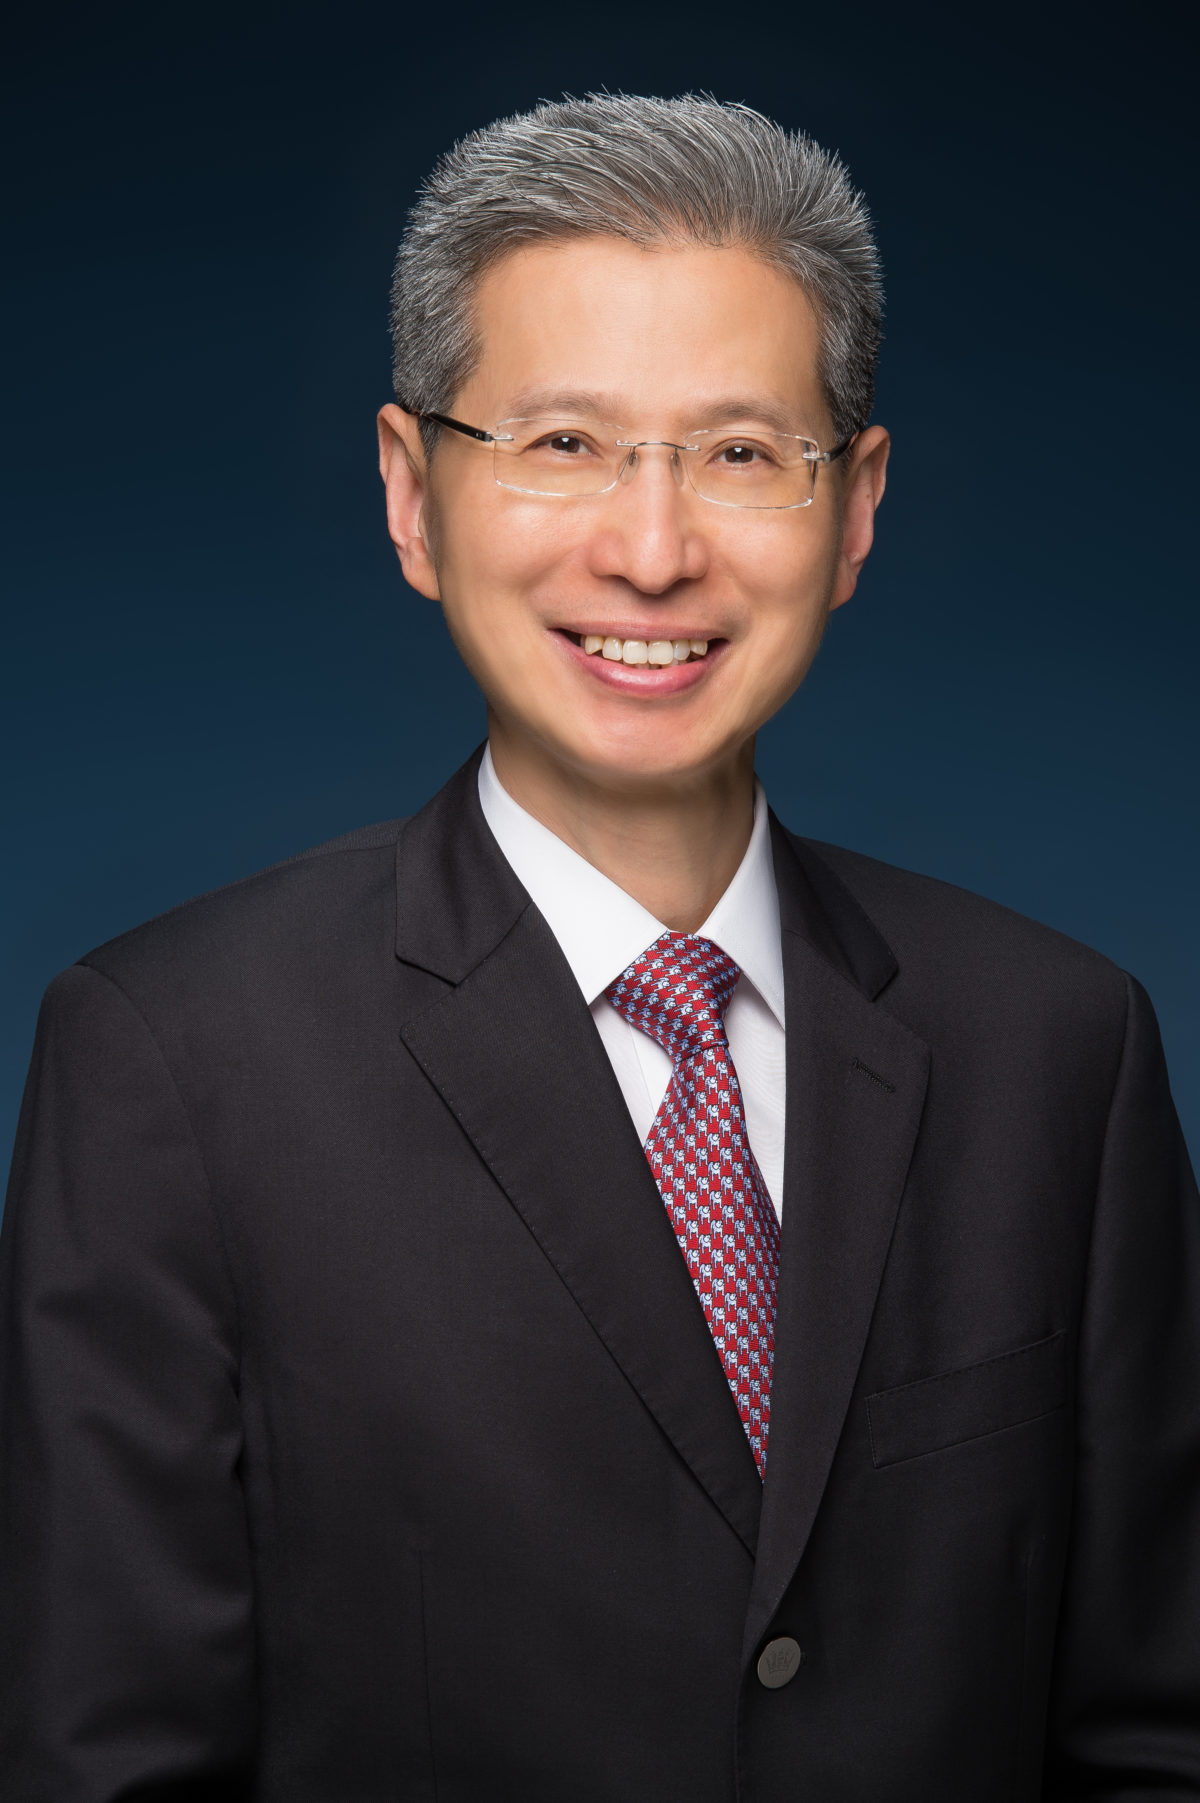 Mr. Allan Wong